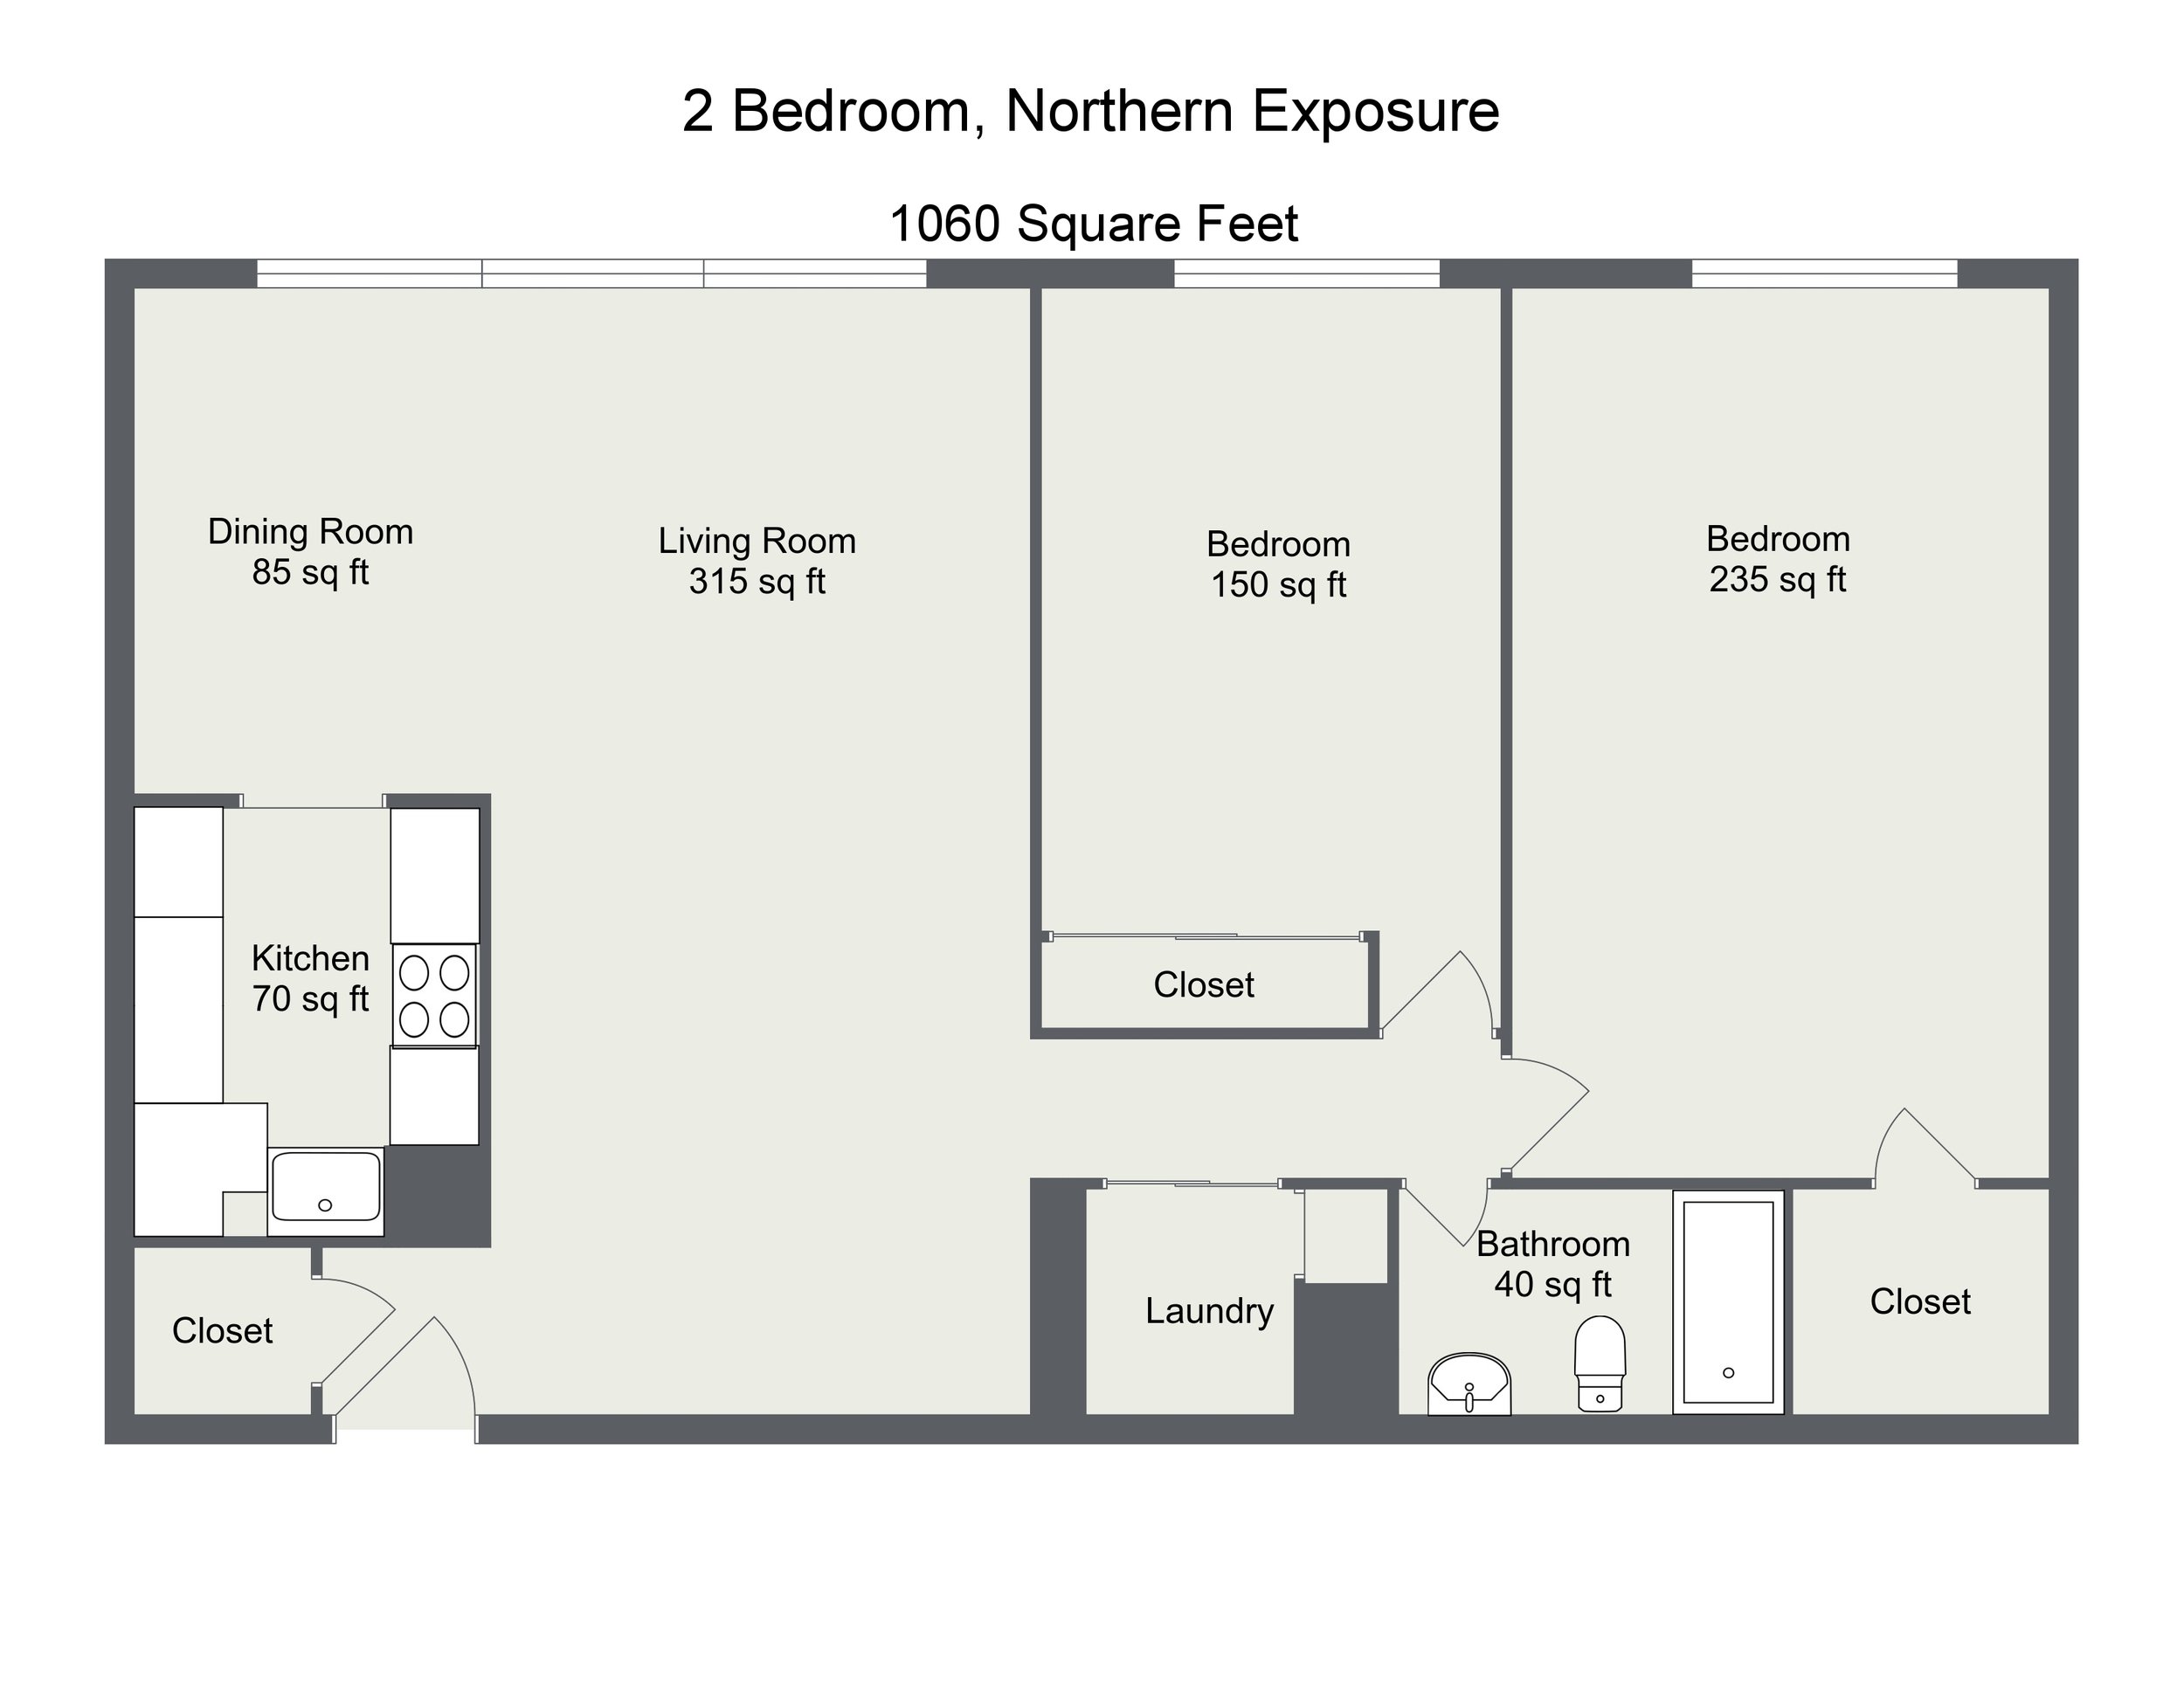 2 Bedroom, Northern Exposure, 01, 07, 15, 21.jpg